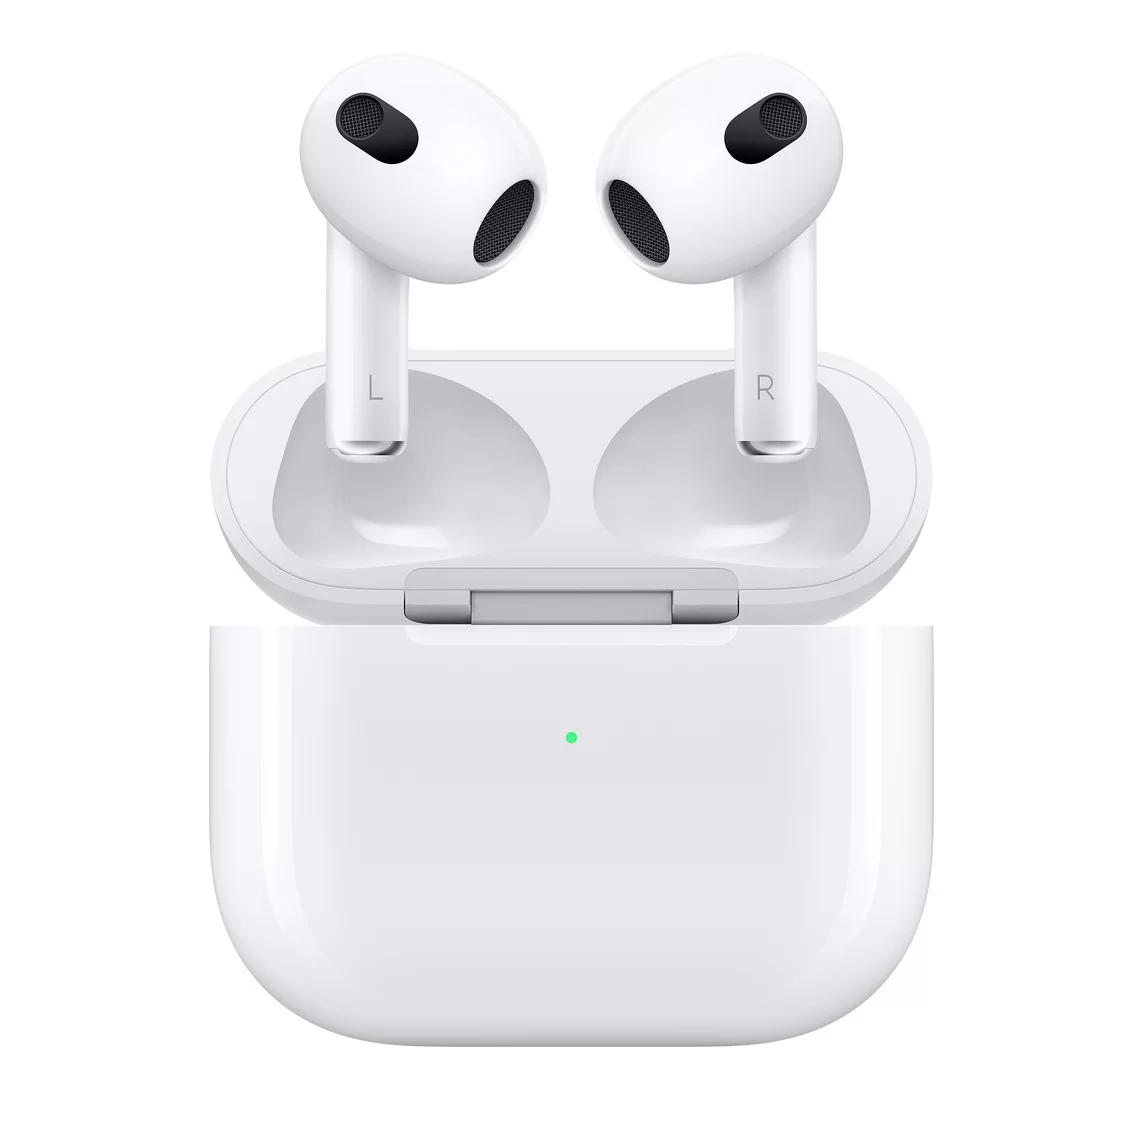 Apple pone a la venta el estuche de carga con USB-C para los AirPods Pro